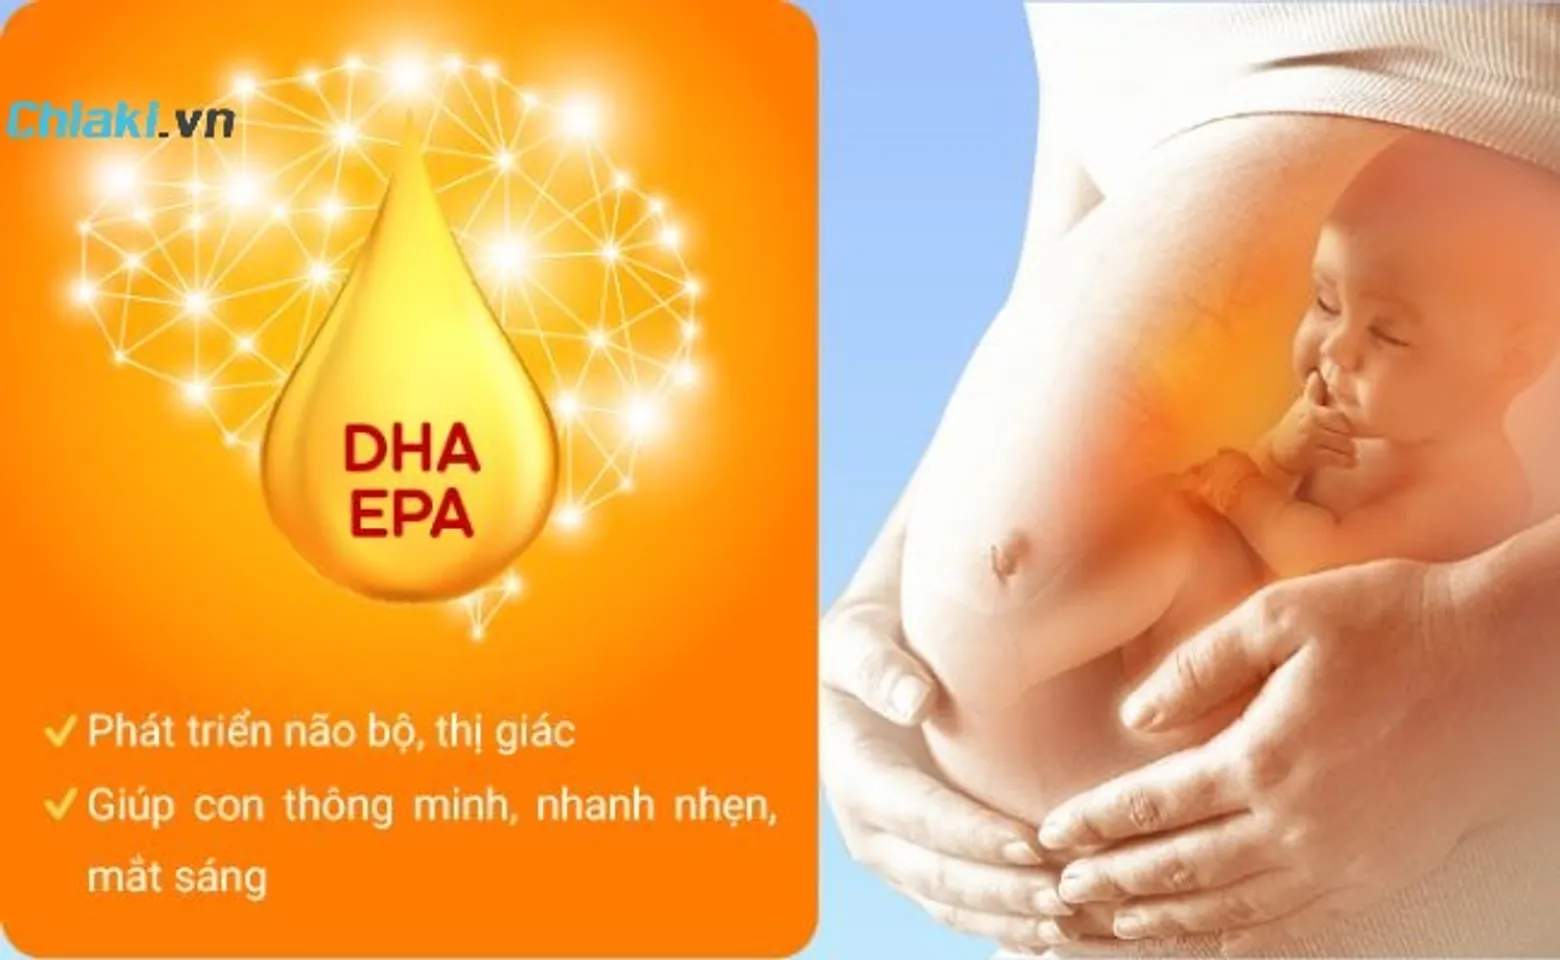 Bà bầu nên uống DHA vào tháng thứ mấy? Lưu ý khi bổ sung DHA cho mẹ bầu